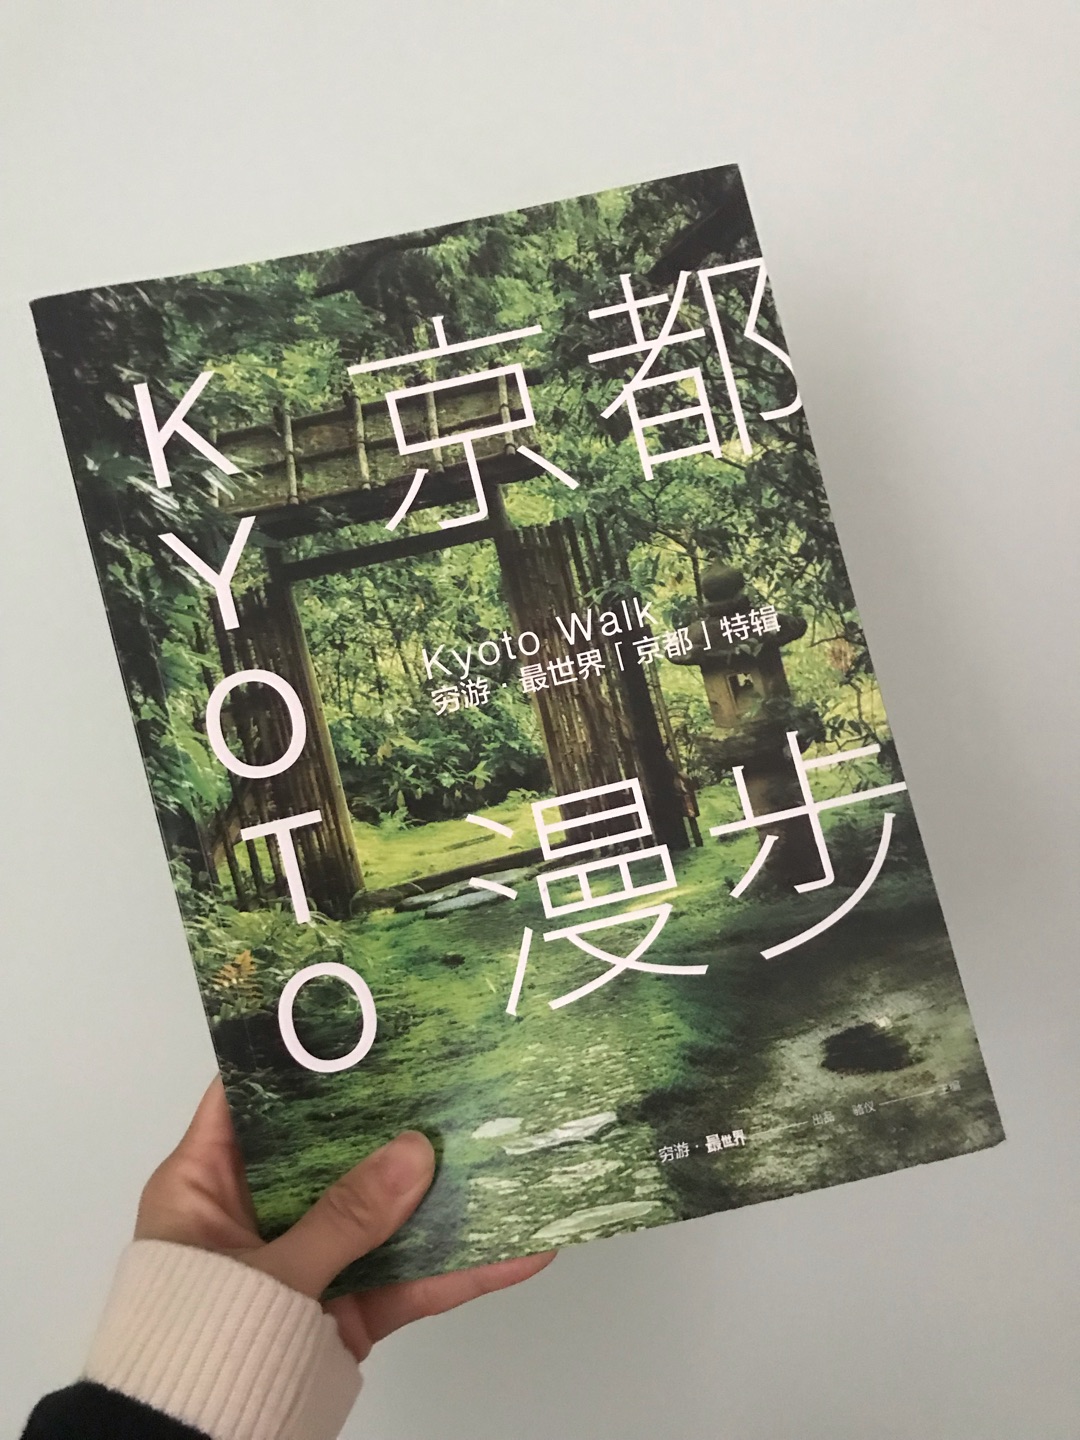 很好的一本书～～ 还有京都的漫步路线什么的，挺喜欢的～～ 赶在去京都之前买的～～